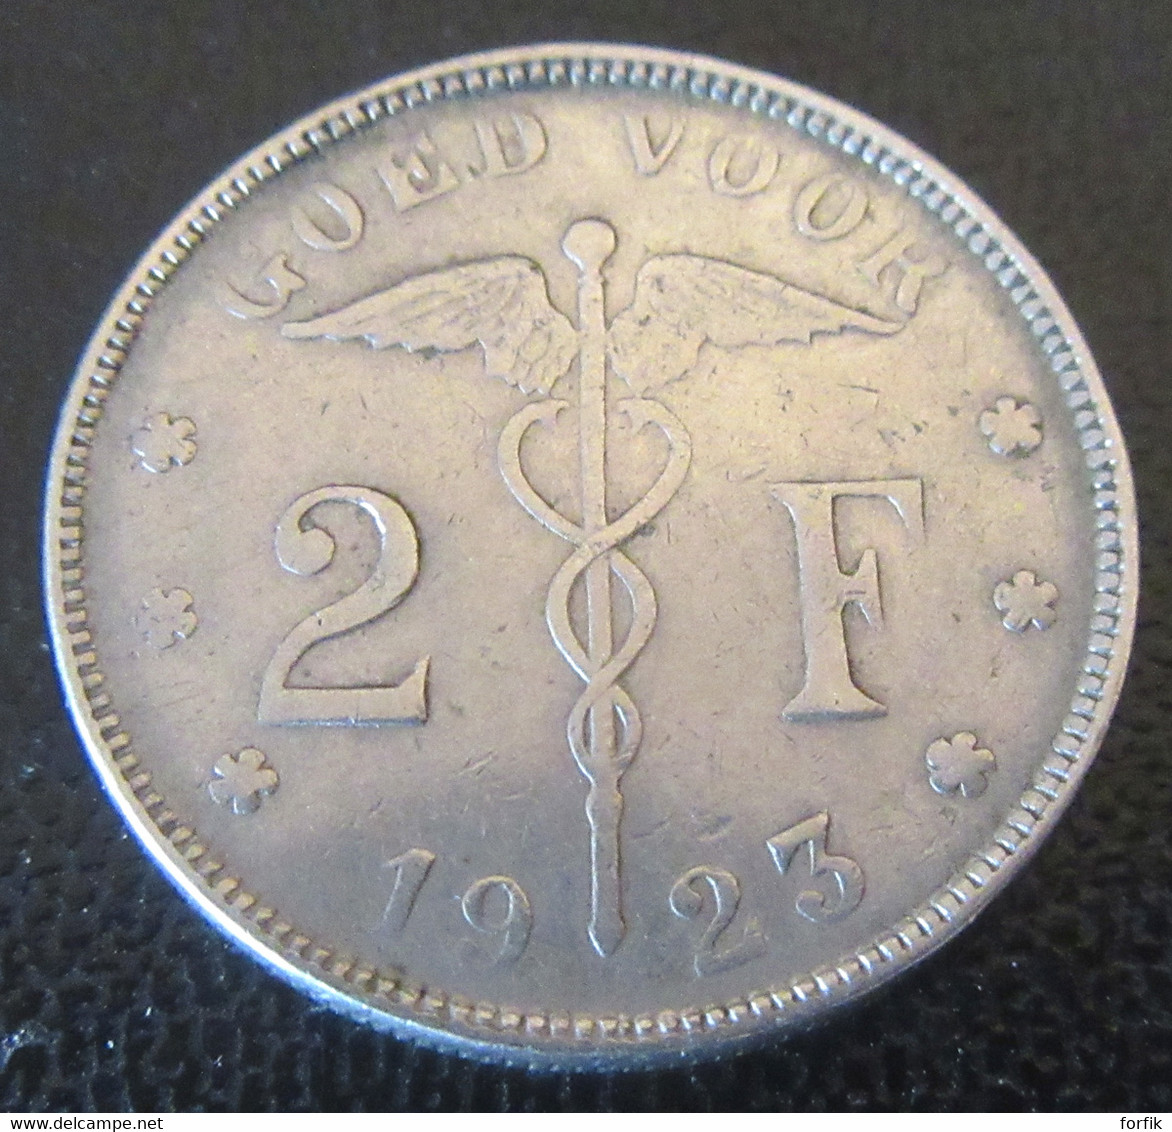 Belgique - Monnaie Bon Pour 2 Francs (Goed Voor 2 F) 1923 - Légende En Néerlandais - 2 Franchi